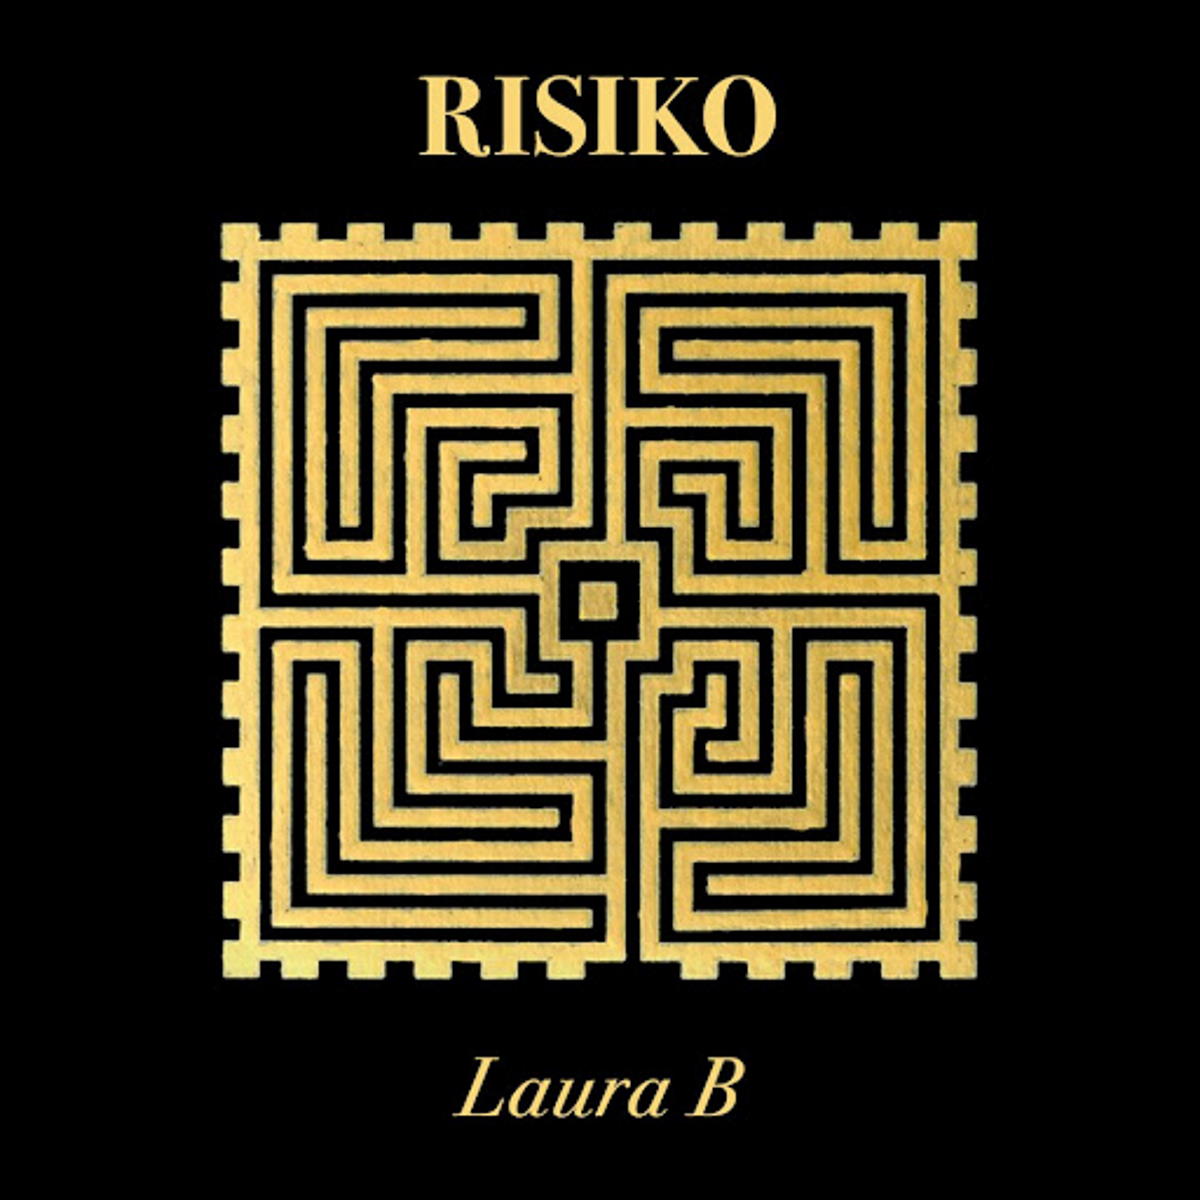 LAURA B “Risiko” è il nuovo singolo della cantautrice bresciana dalle sfumature pop